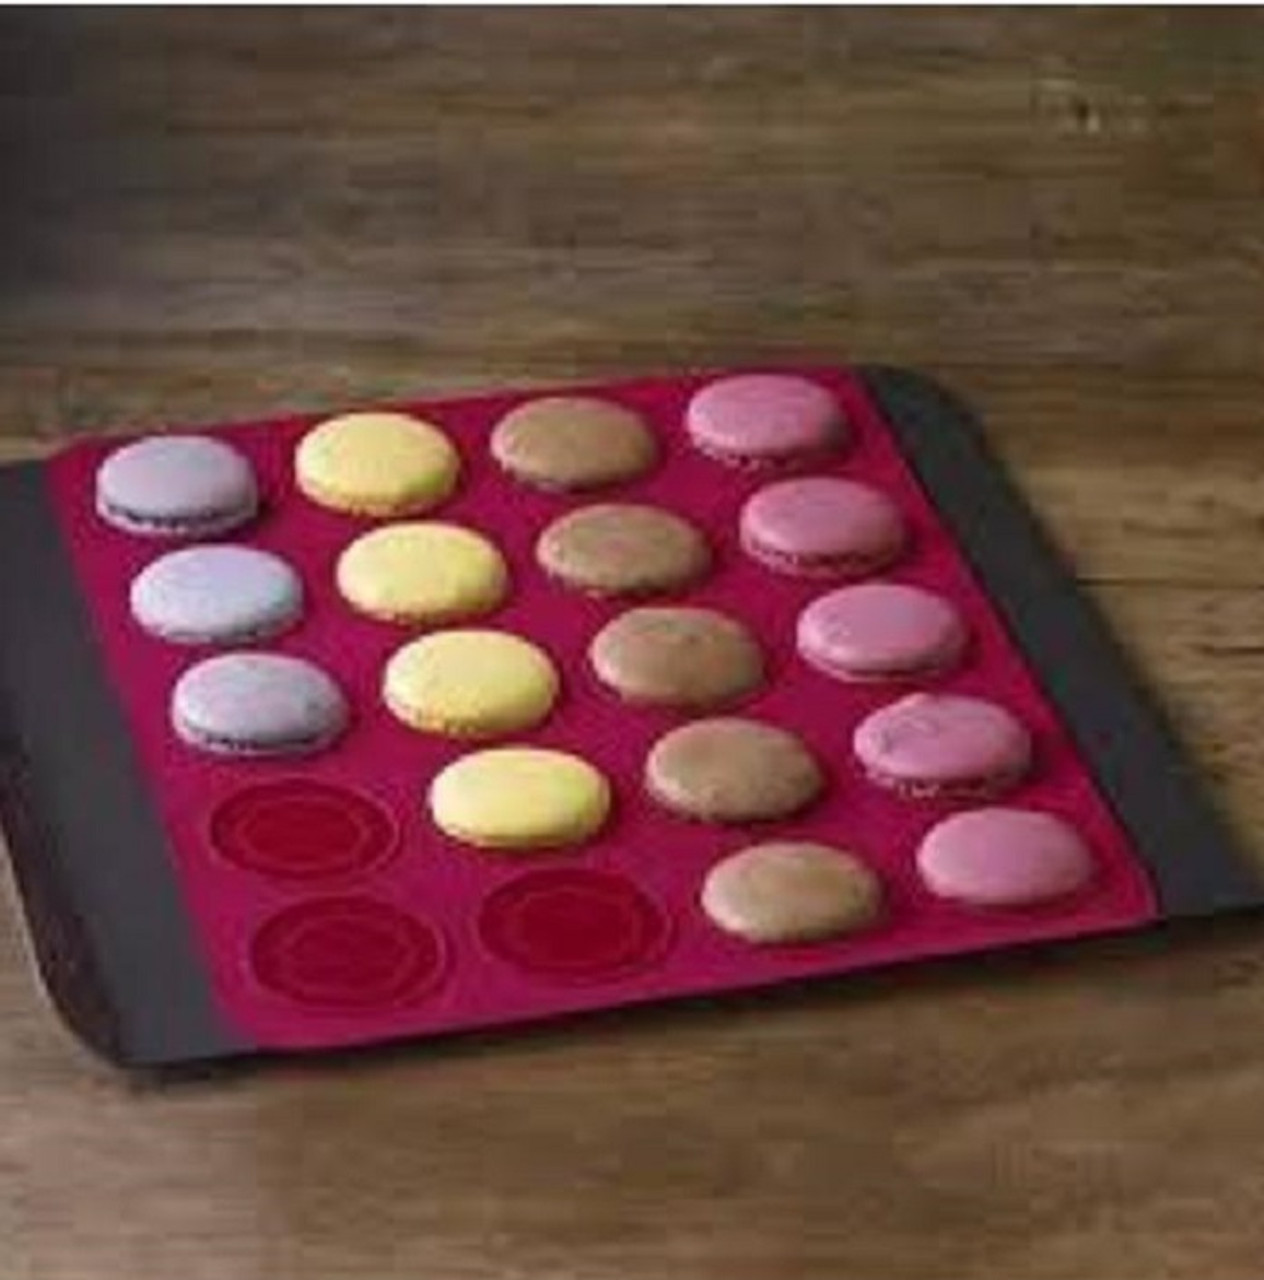 de Buyer Nonstick Silicone Macaron Baking Mat for Pan, Dishwasher